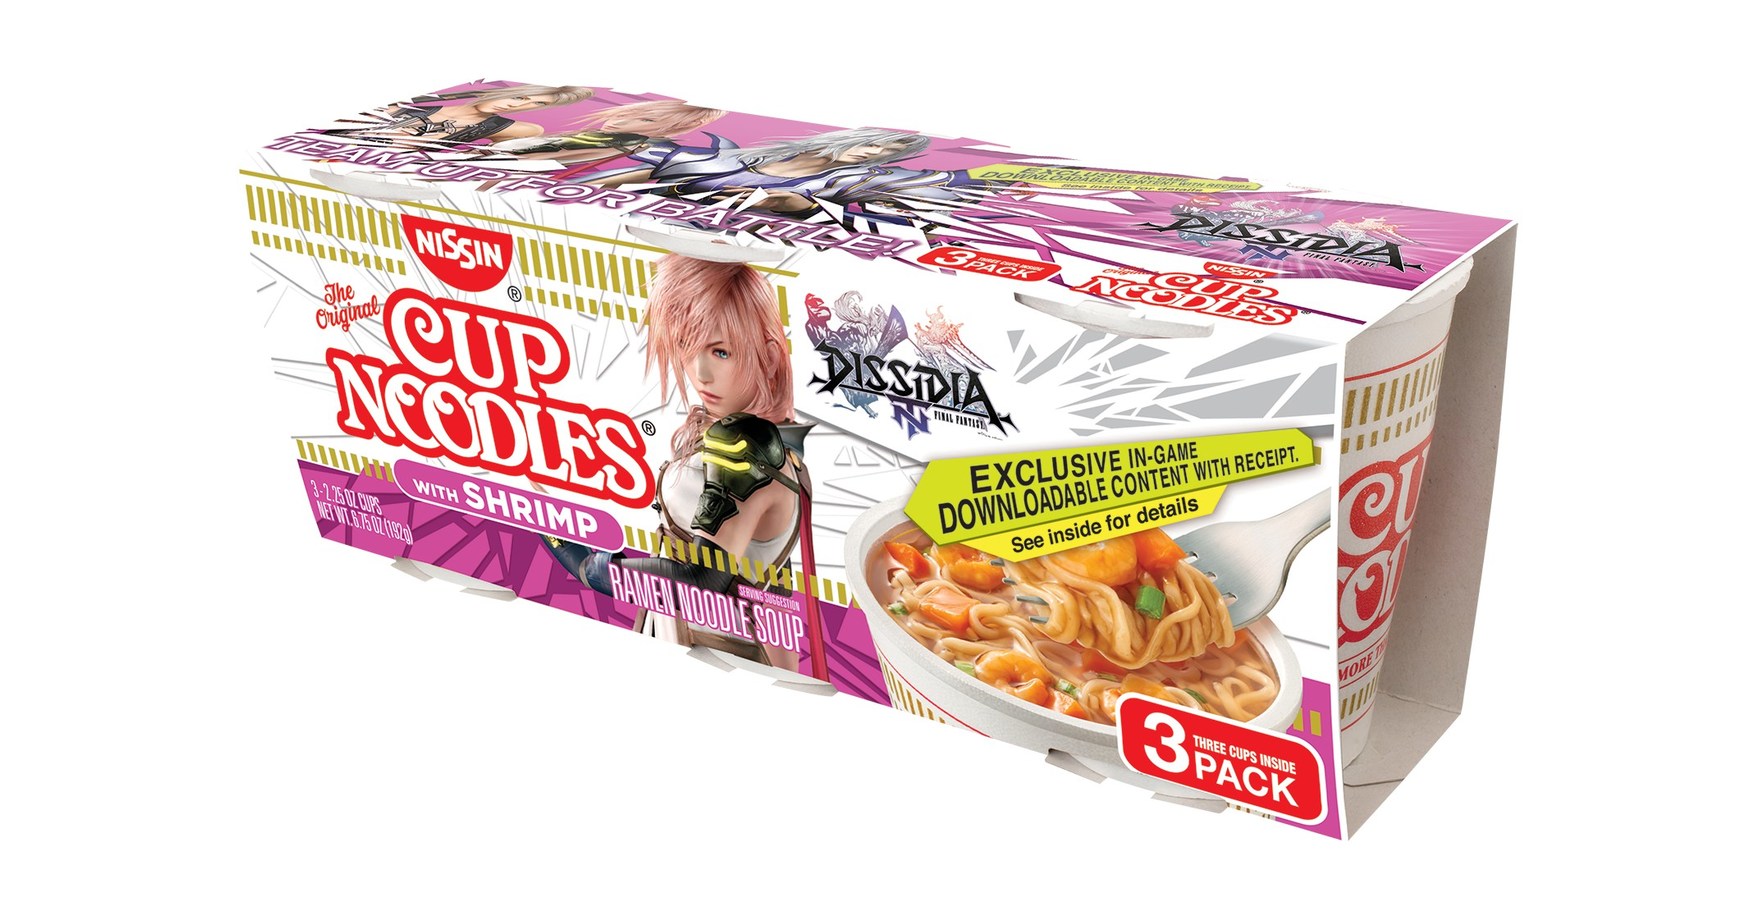 Cup Noodles Shrimp - Nissin Food